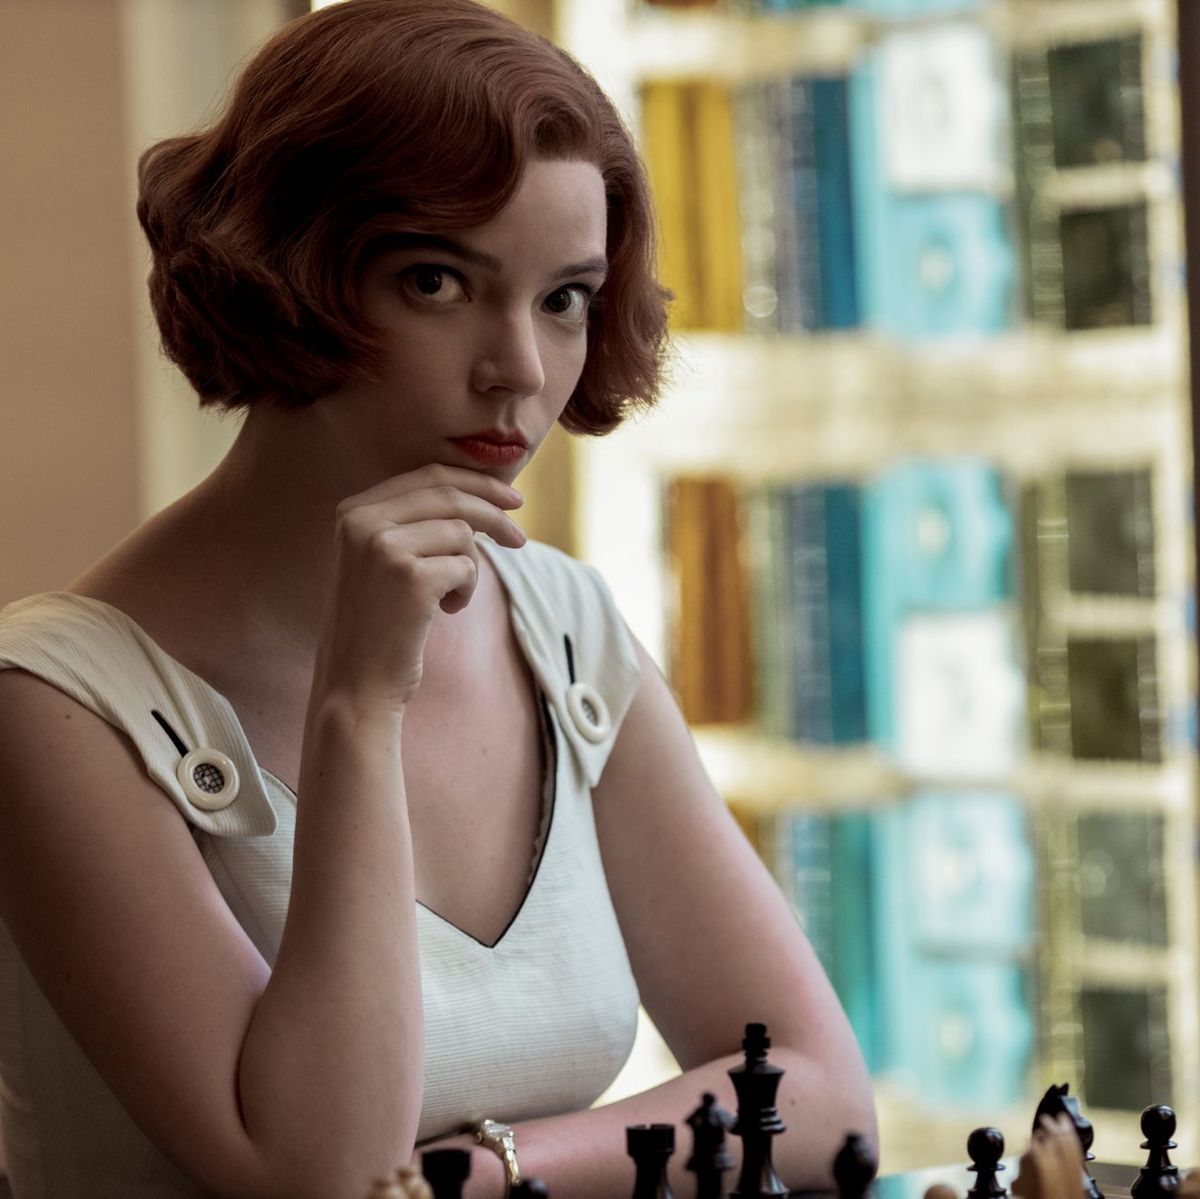 Es el ajedrez un deporte o un juego de mesa?